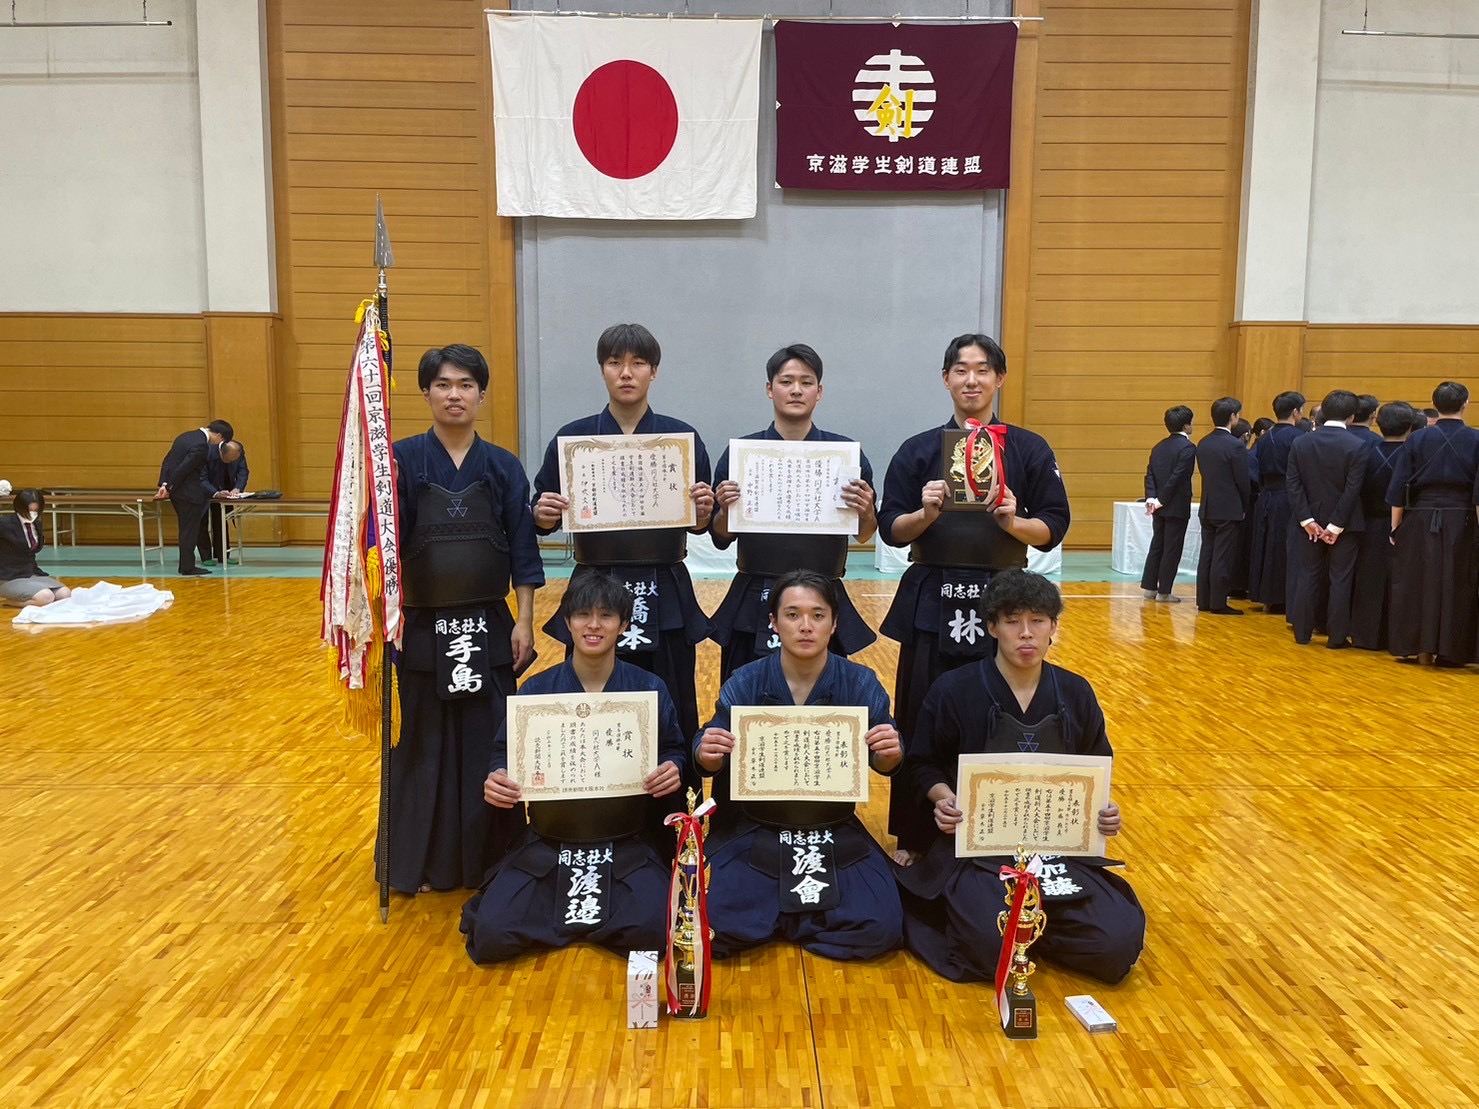 【結果報告】第54回京滋新人学生剣道大会